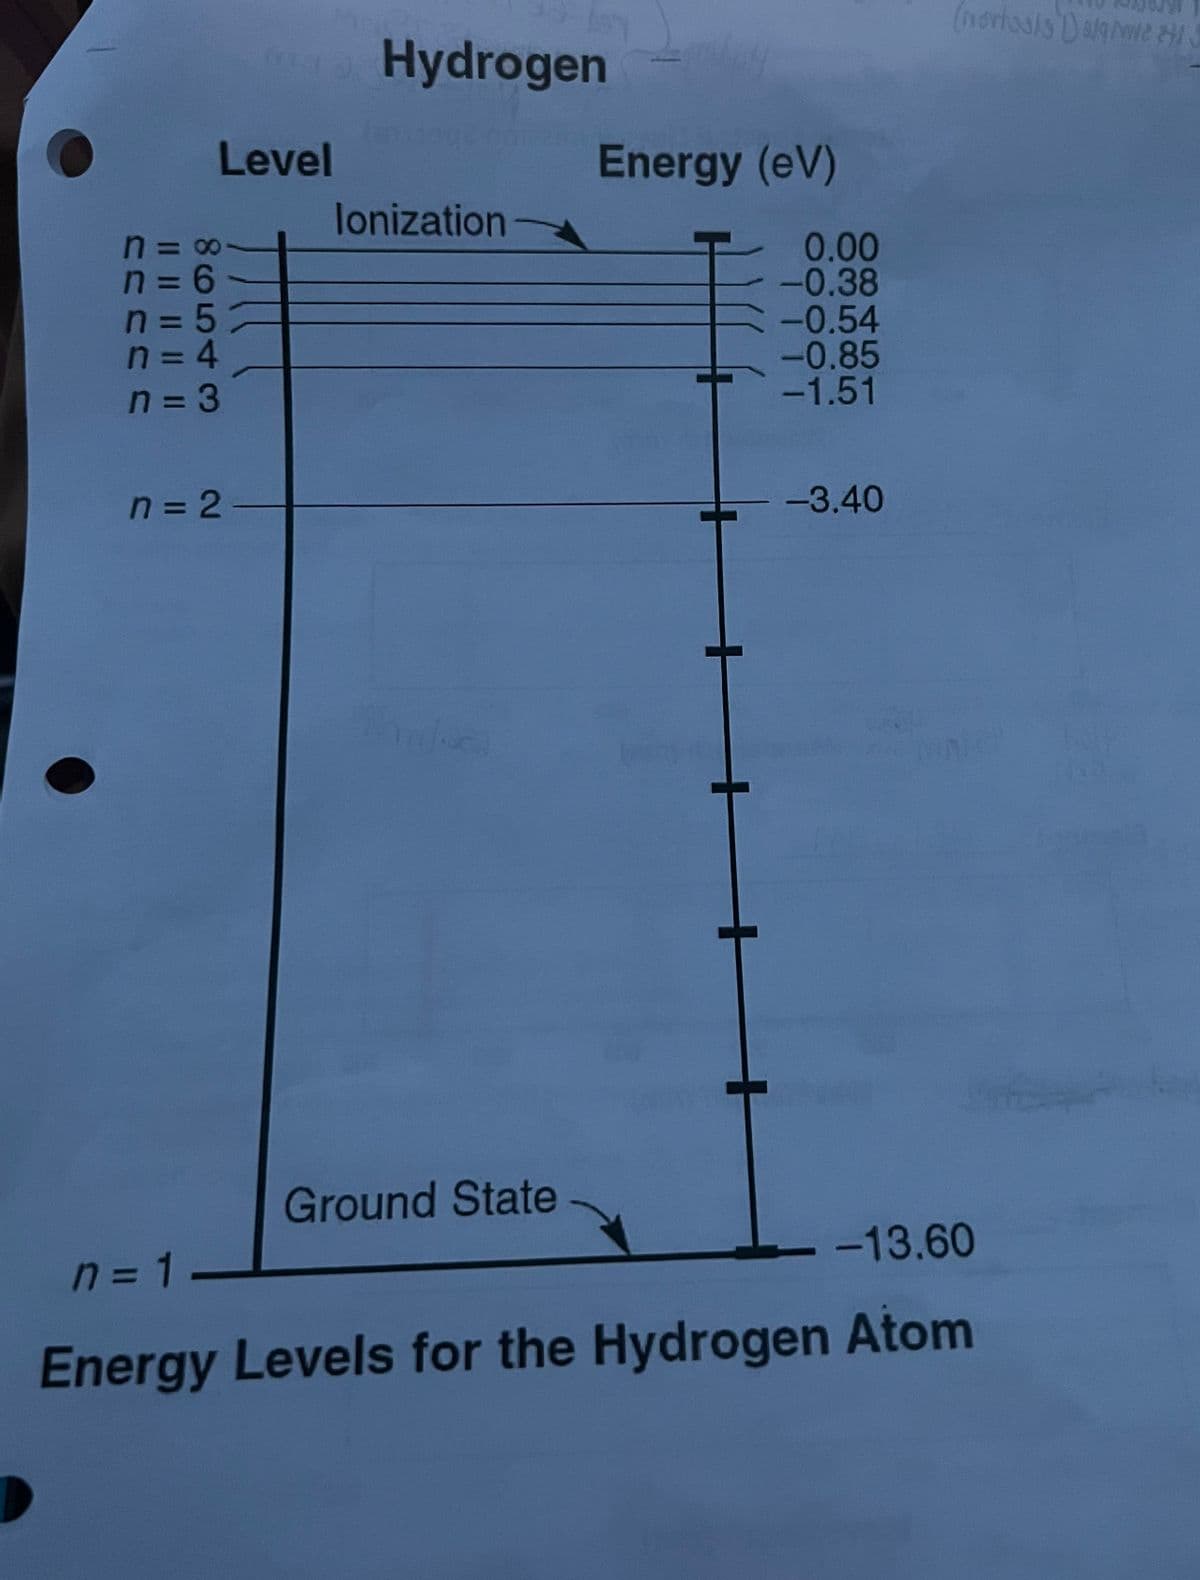 (nortasis Dagme HI
Hydrogen
Level
Energy (eV)
lonization
n = 00
n =D6
n = 5
n=D4
0.00
-0.38
-0.54
-0.85
-1.51
n = 3
n = 2
-3.40
Ground State
n =D1
- -13.60
%3D
Energy Levels for the Hydrogen Atom
